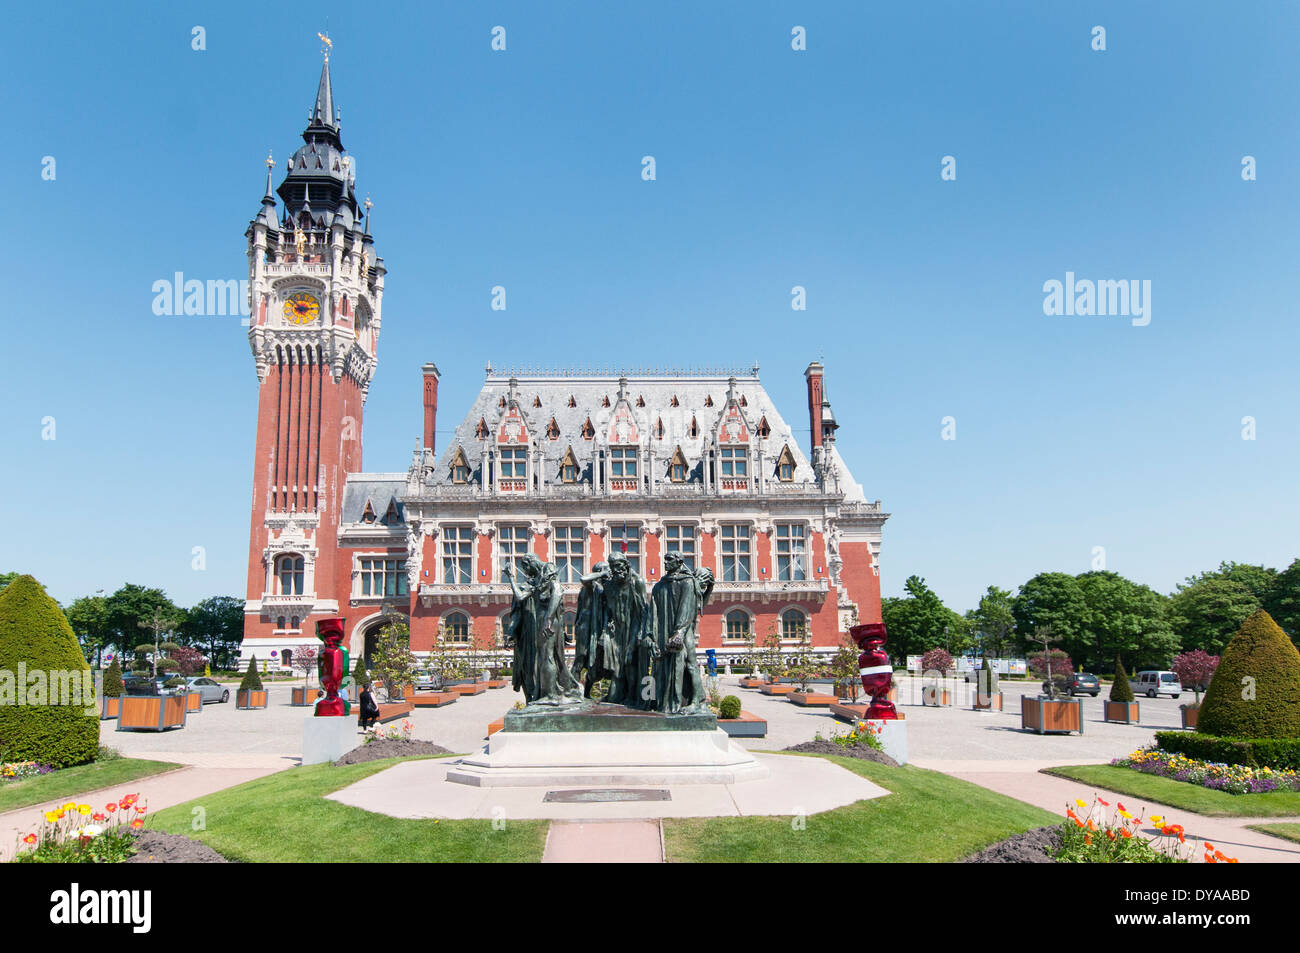 La France, Calais. Les six Bourgeois de Calais par Rodin se trouve en face de l'hôtel de ville et Beffroi, conçu par Louis Debrouwer. Banque D'Images